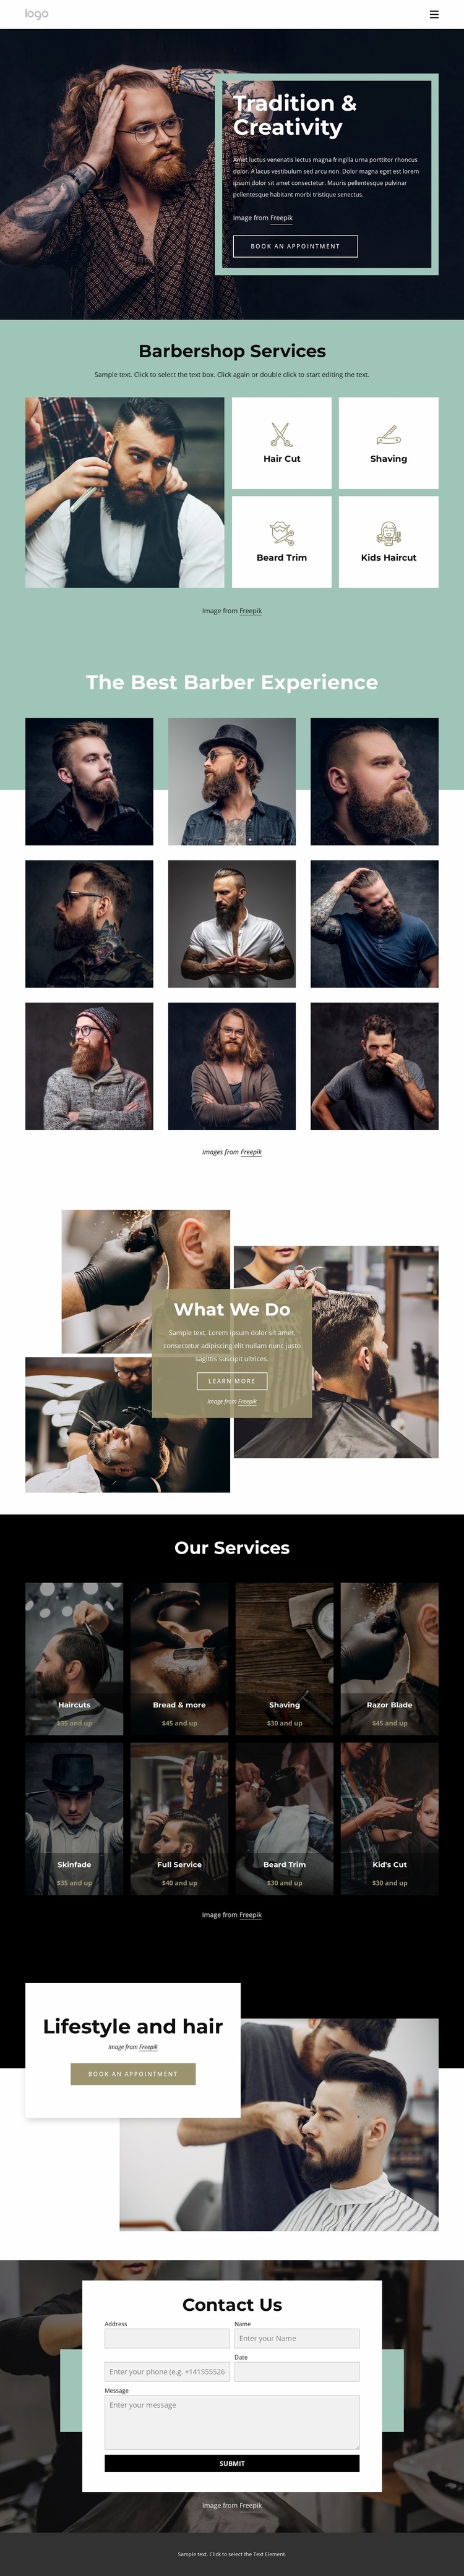 Public barber salon Website Design